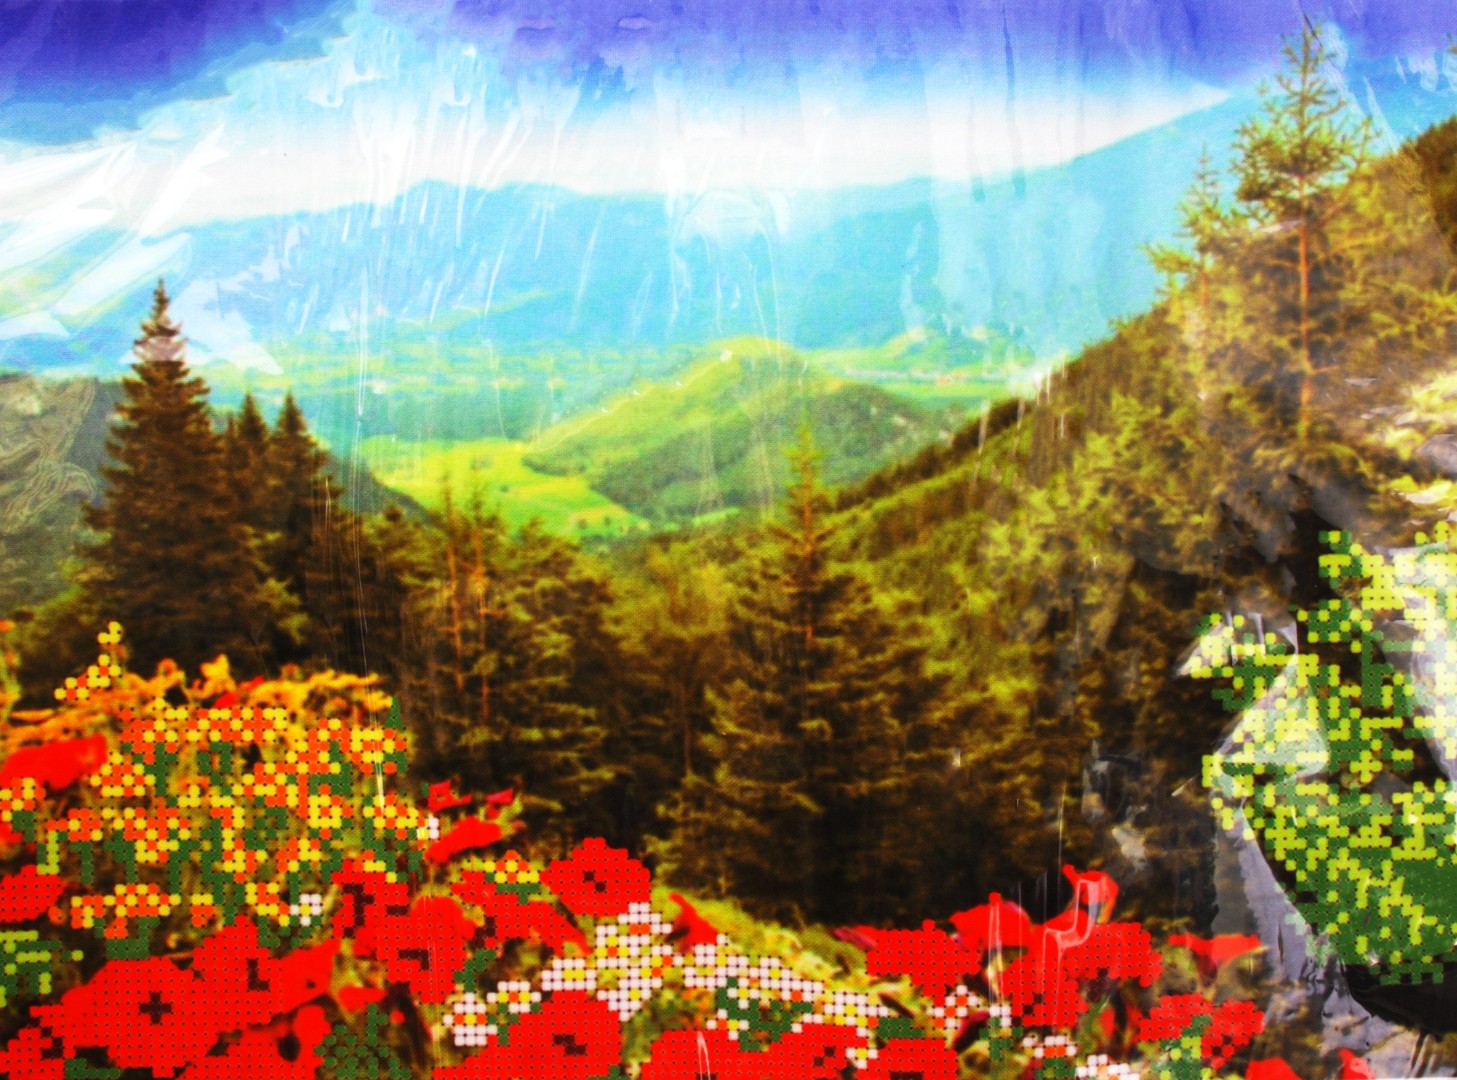 Ткань для вышивания бисером А4+ БИС МП-067 «Цветы в горах» 27*35 см